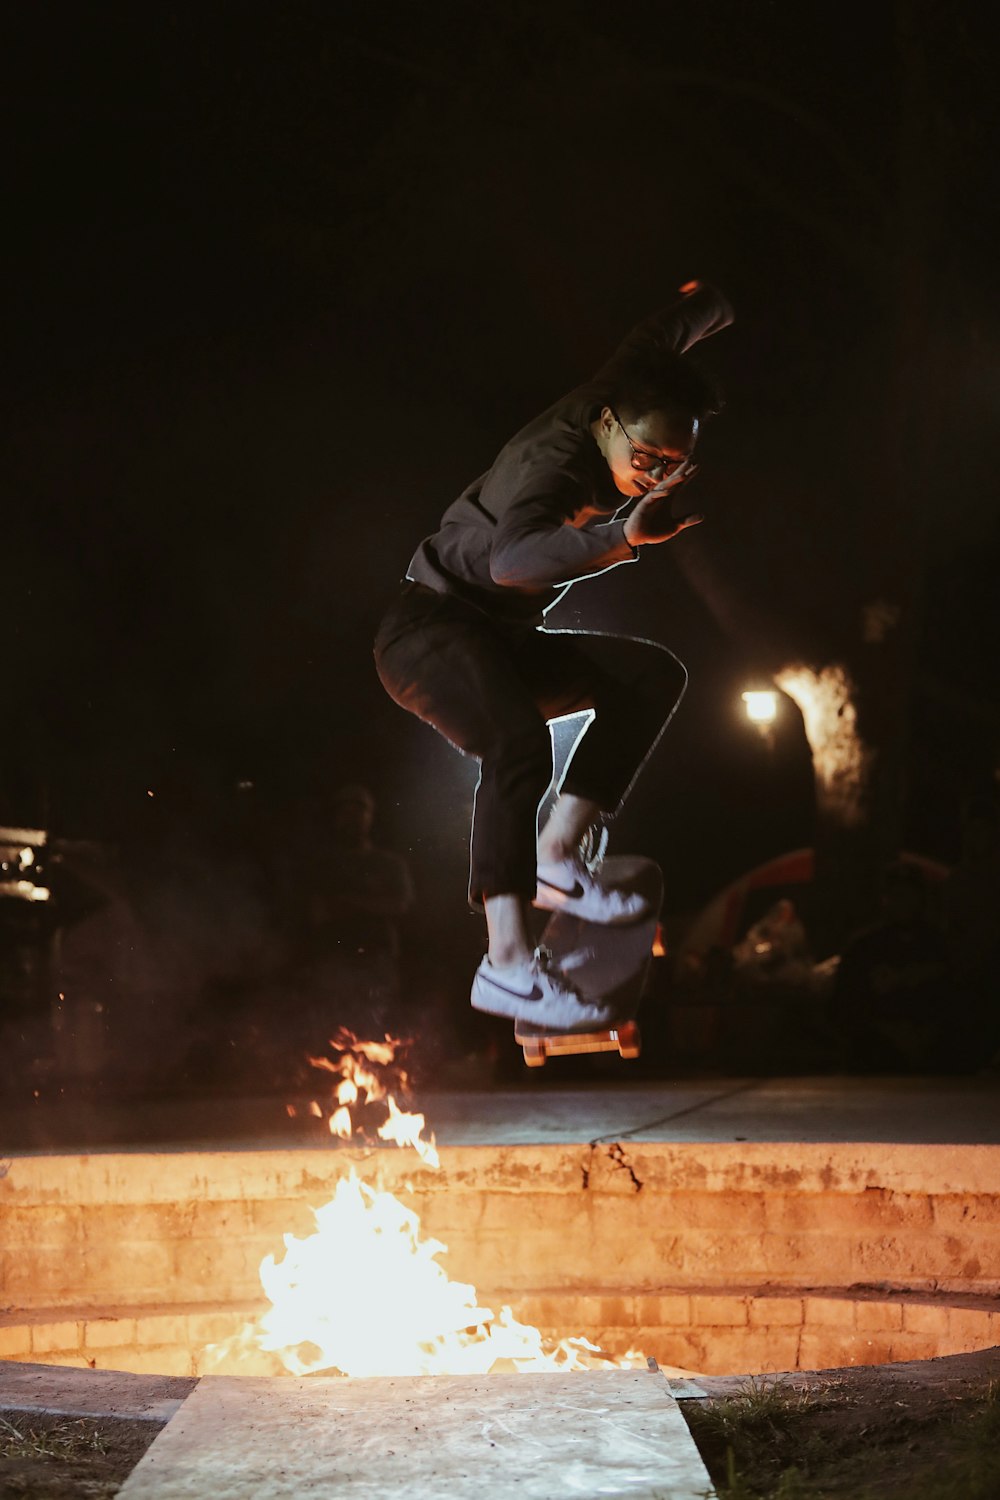 homme en veste noire skateboard près du feu